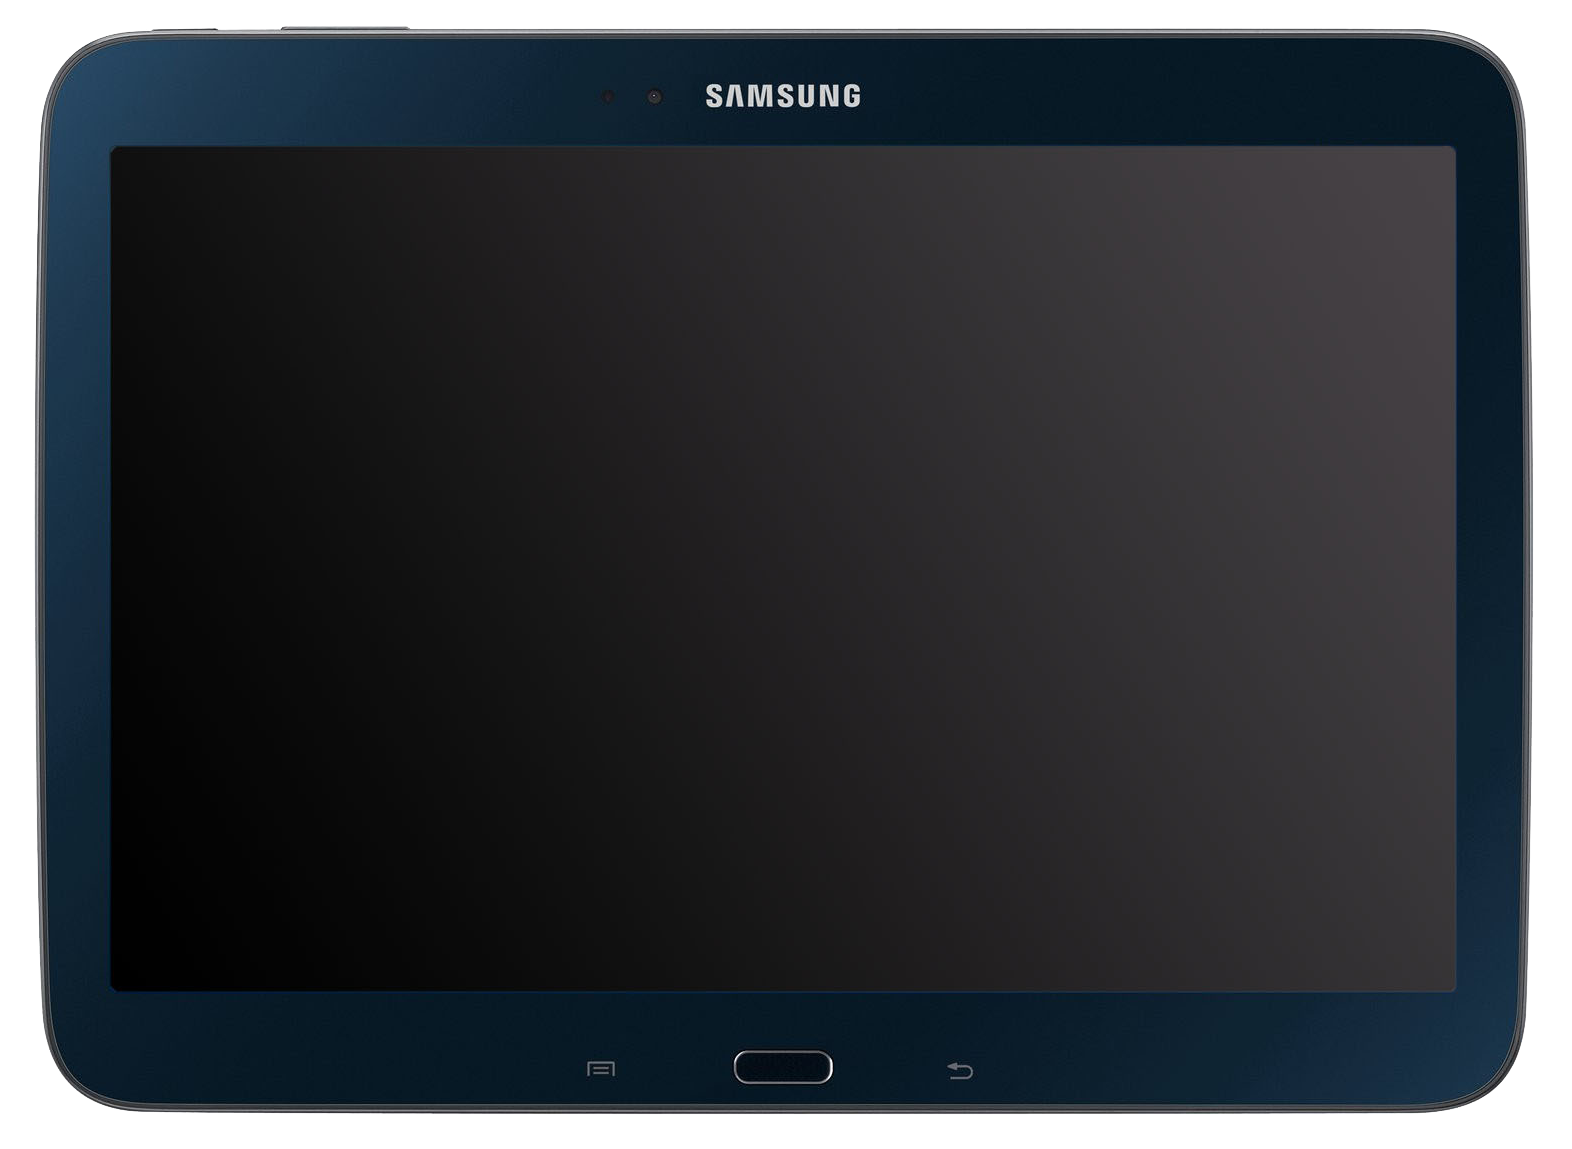 Samsung Galaxy Tab 3 10.1 Wi-Fi schwarz - Ohne Vertrag